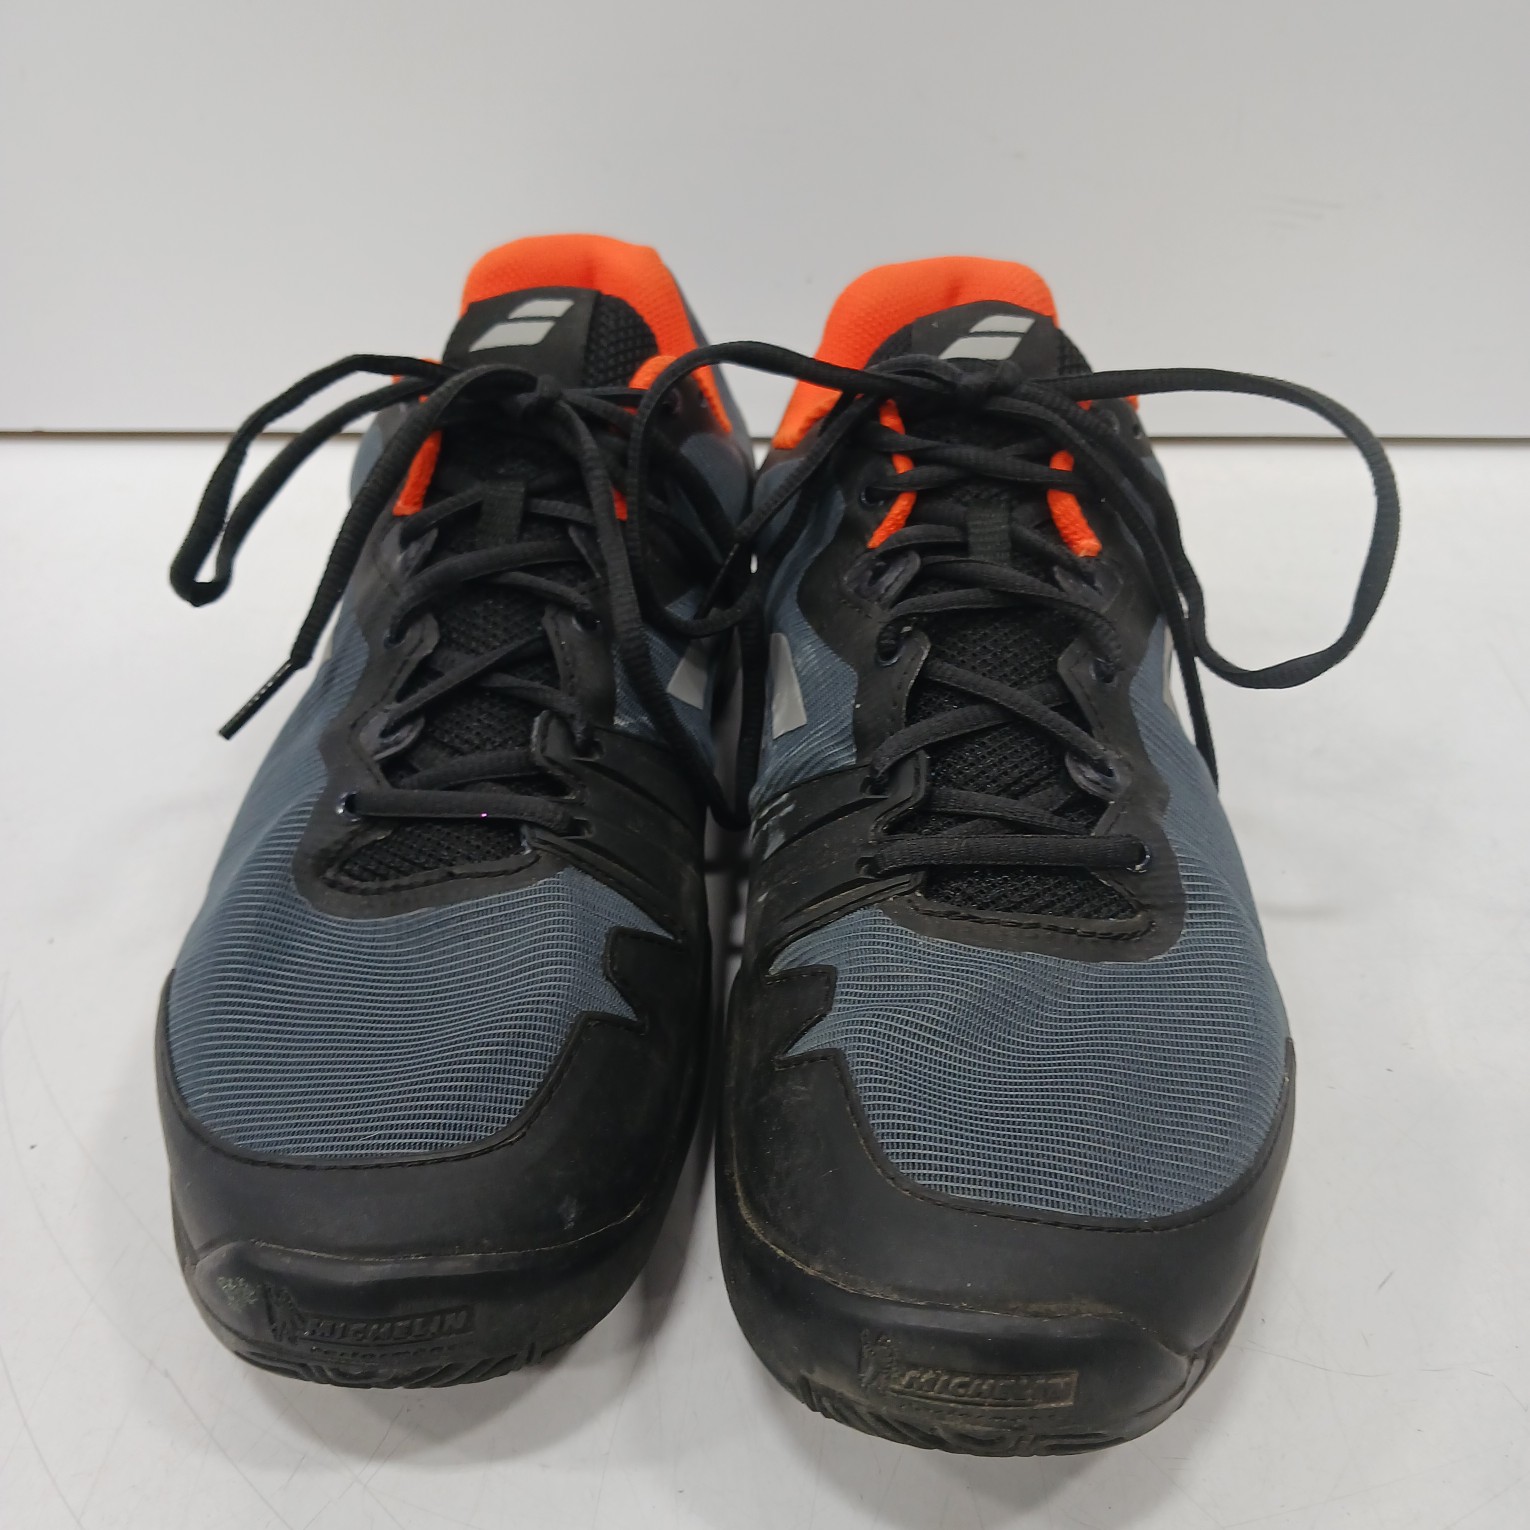 Buy the Mens SFX 3 30S22529 Black Orange Lace Up Low Top Tennis Shoes ...